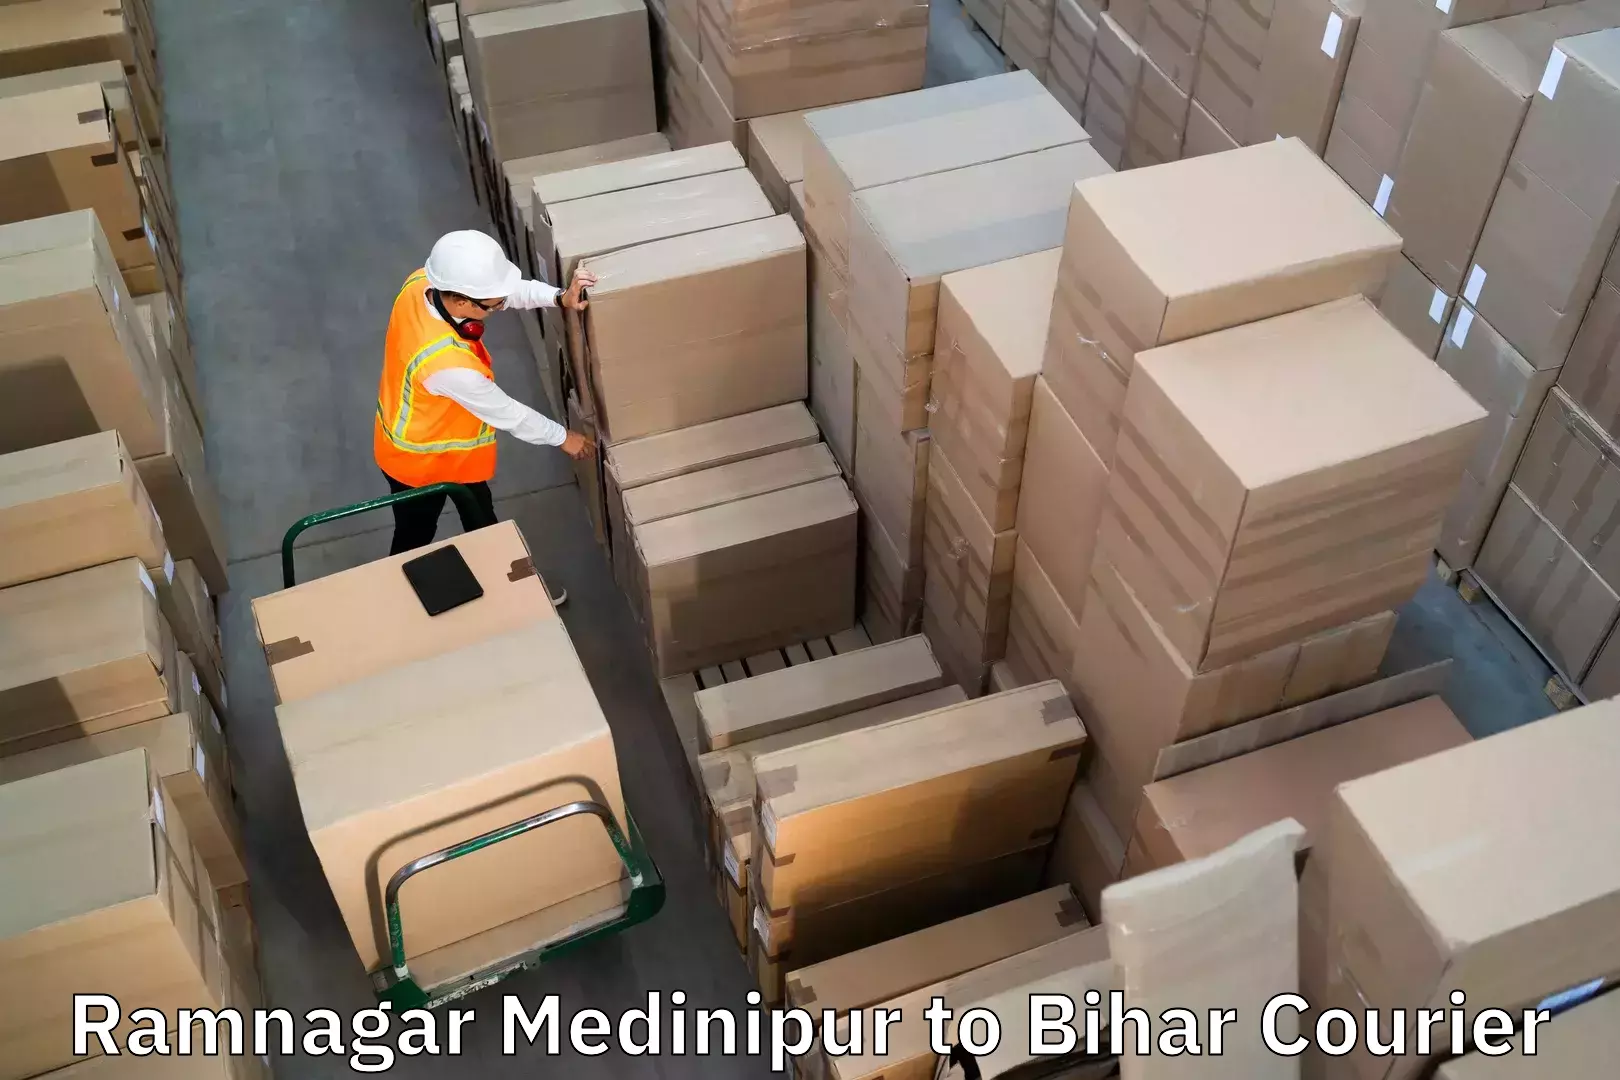 Baggage courier guide Ramnagar Medinipur to Jiwdhara